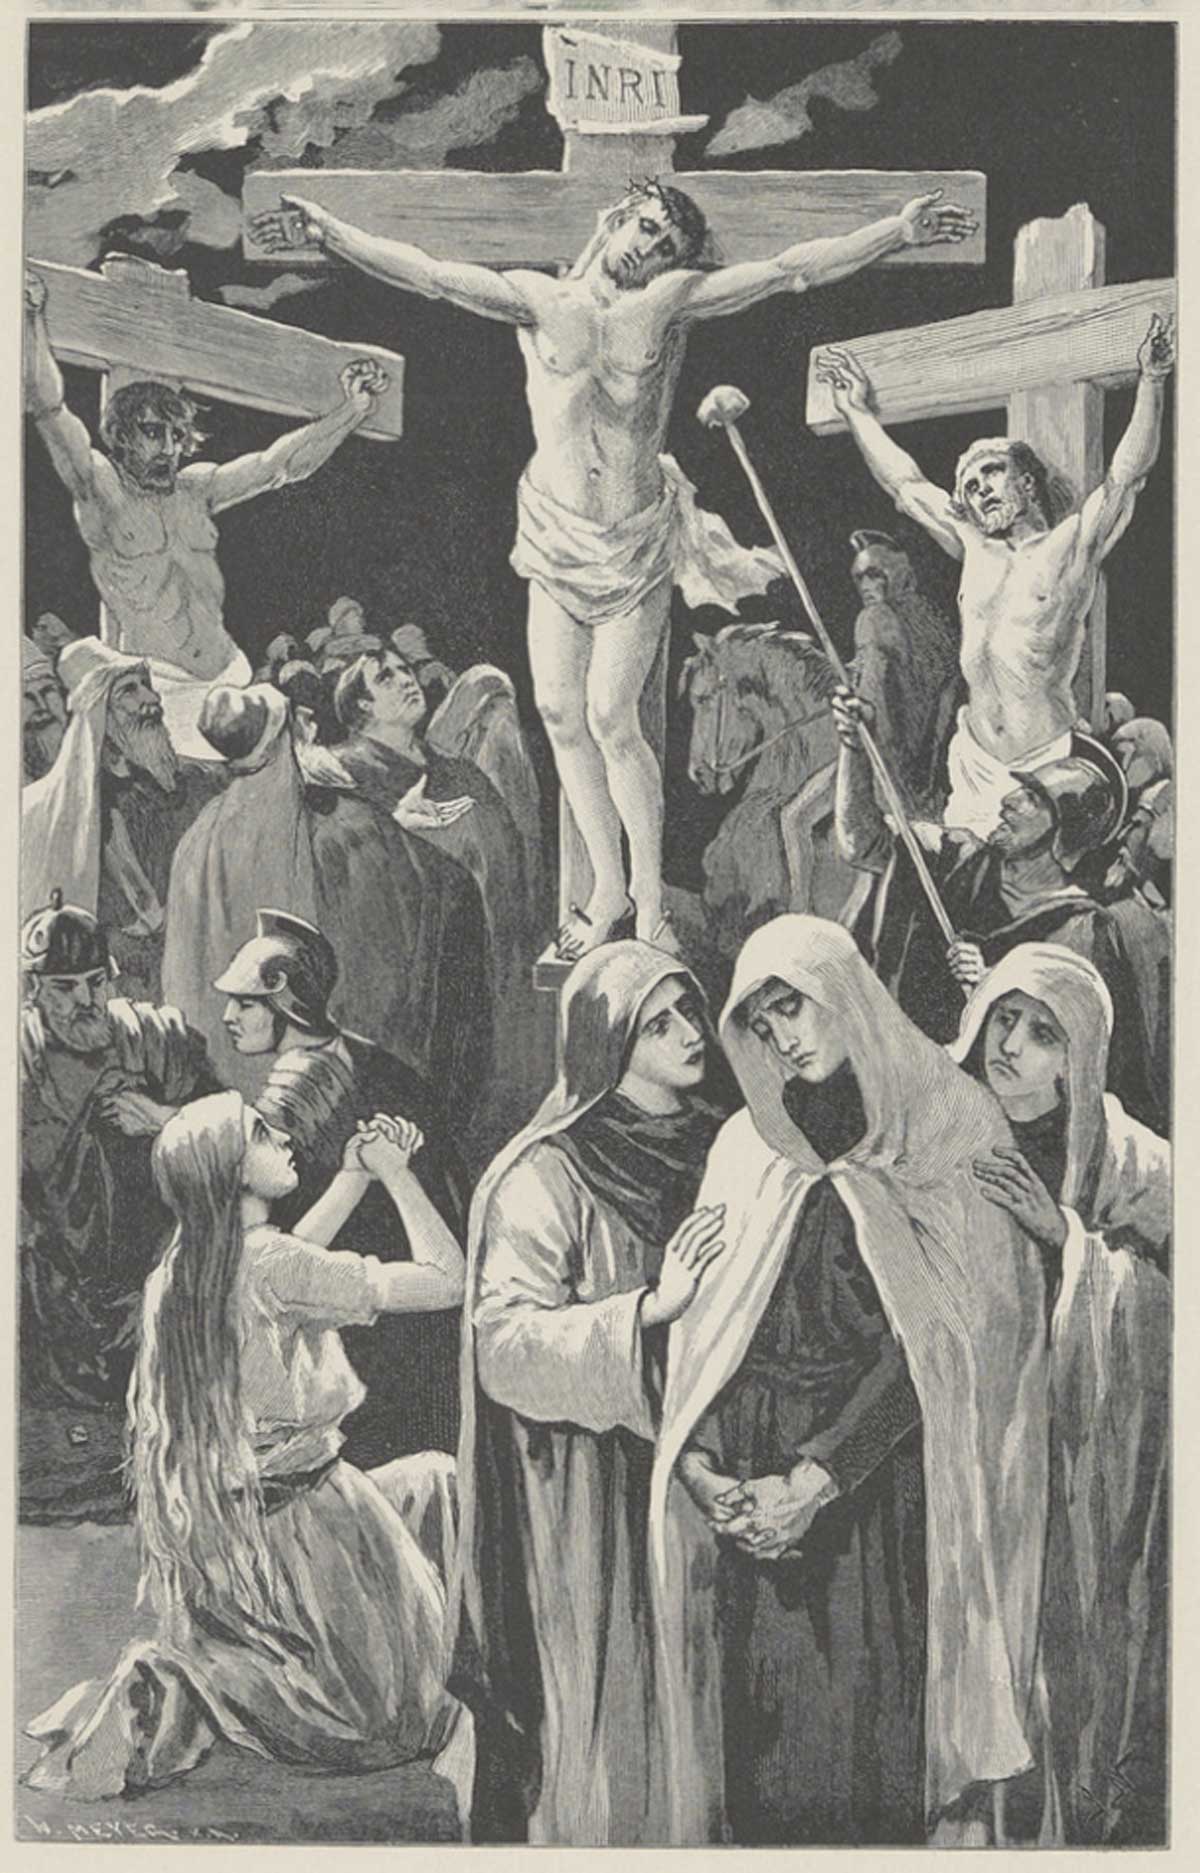 Illustration ur Kristna högtids- och helgedagar (1889)